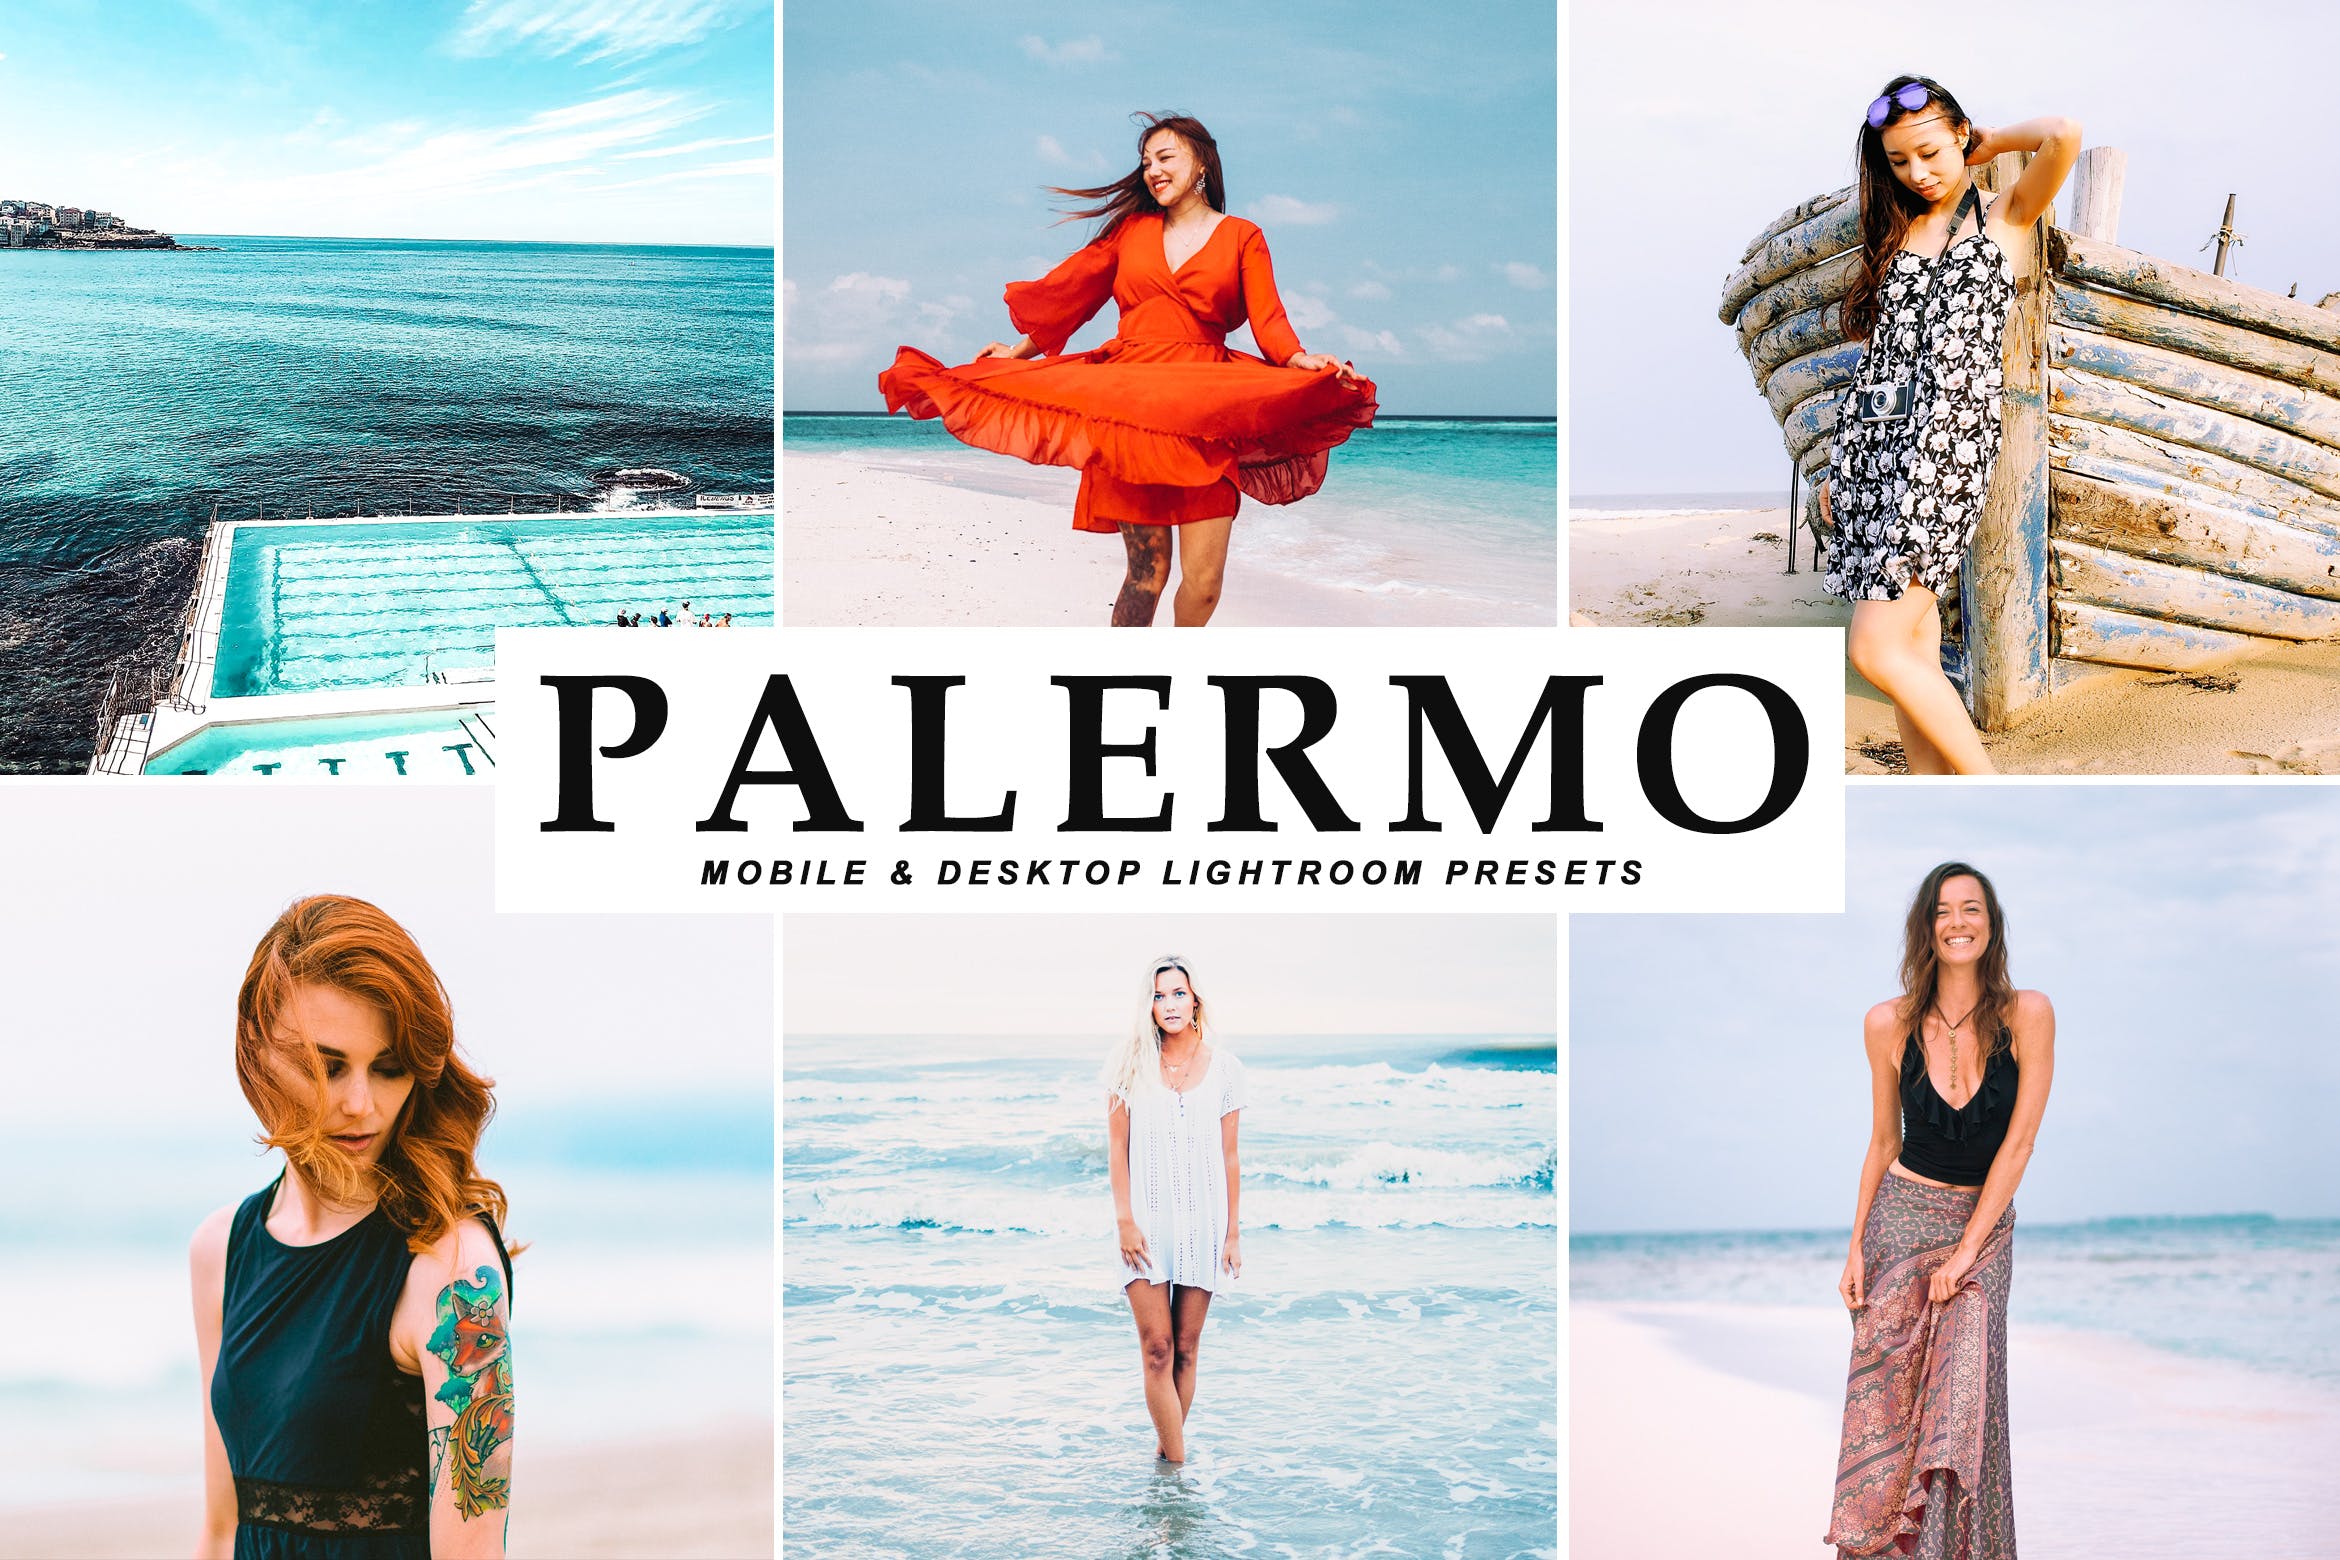 沙滩海岛阳光照片调色滤镜16设计素材网精选LR预设 Palermo Mobile & Desktop Lightroom Presets插图